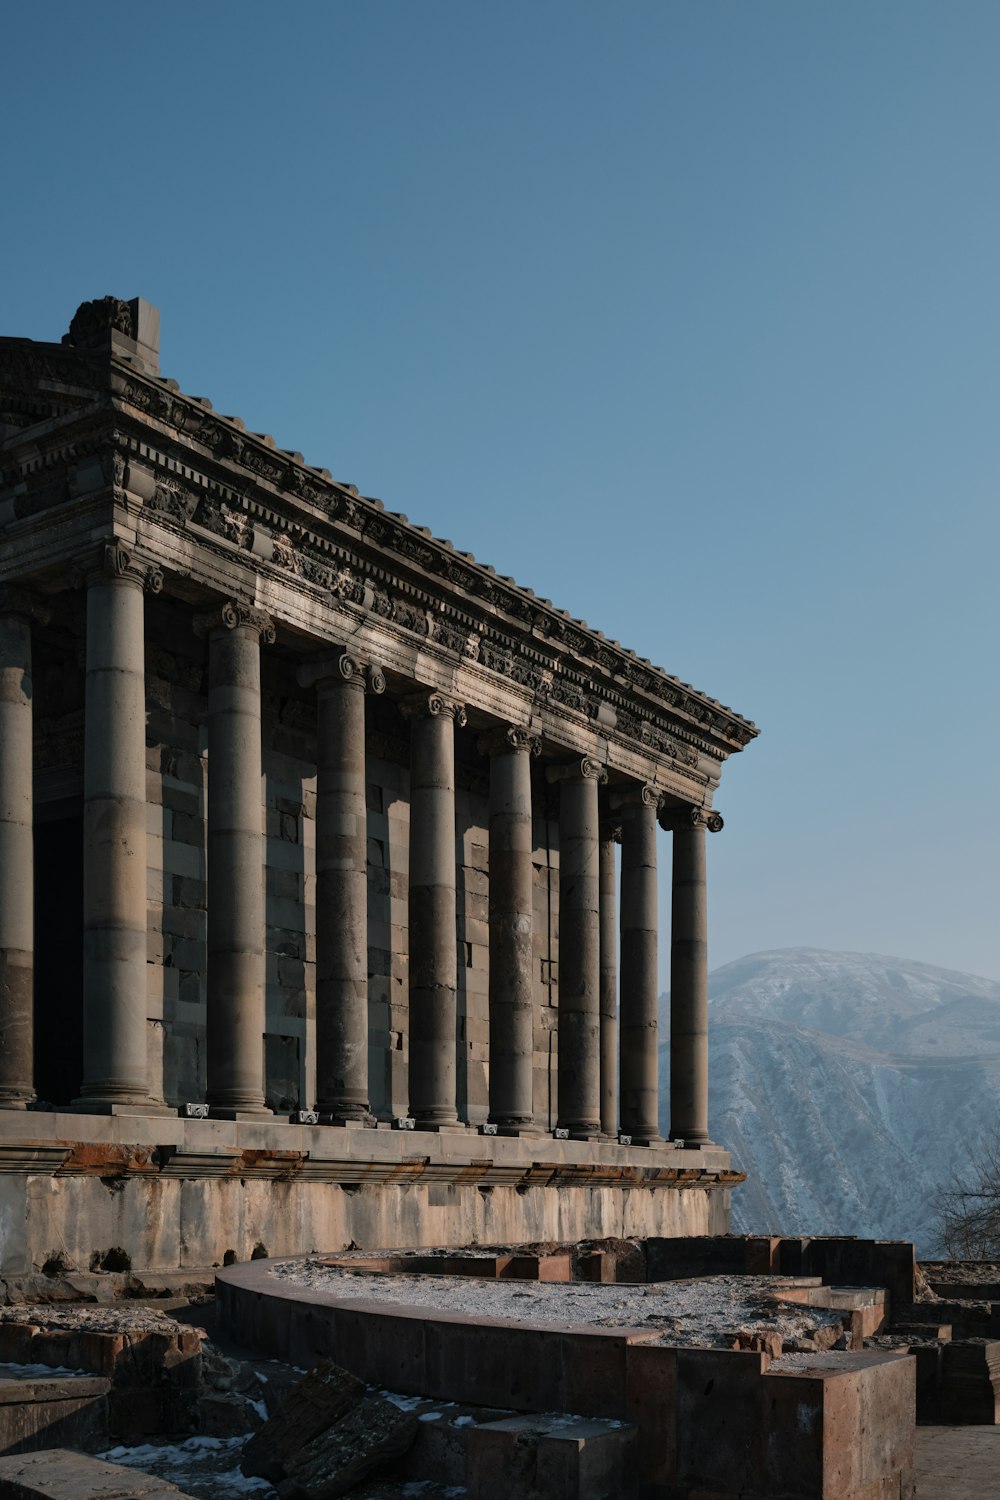 Ein altes Gebäude mit vielen Säulen und einem Berg im Hintergrund